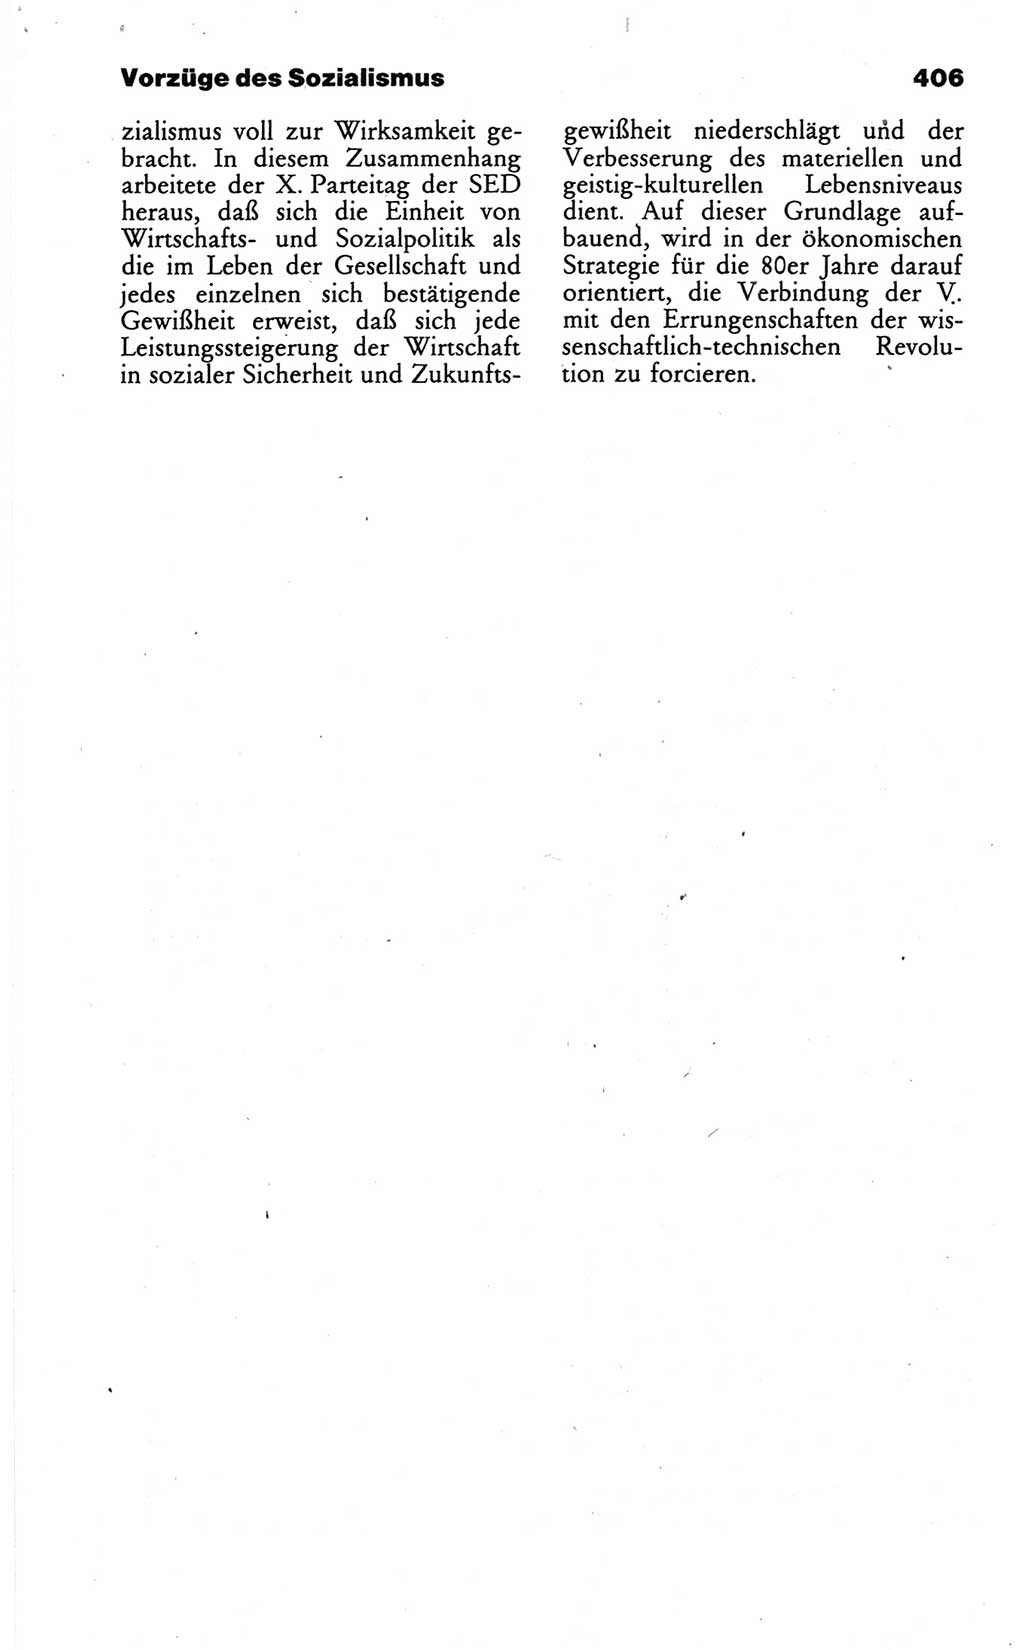 Wörterbuch des wissenschaftlichen Kommunismus [Deutsche Demokratische Republik (DDR)] 1986, Seite 406 (Wb. wiss. Komm. DDR 1986, S. 406)